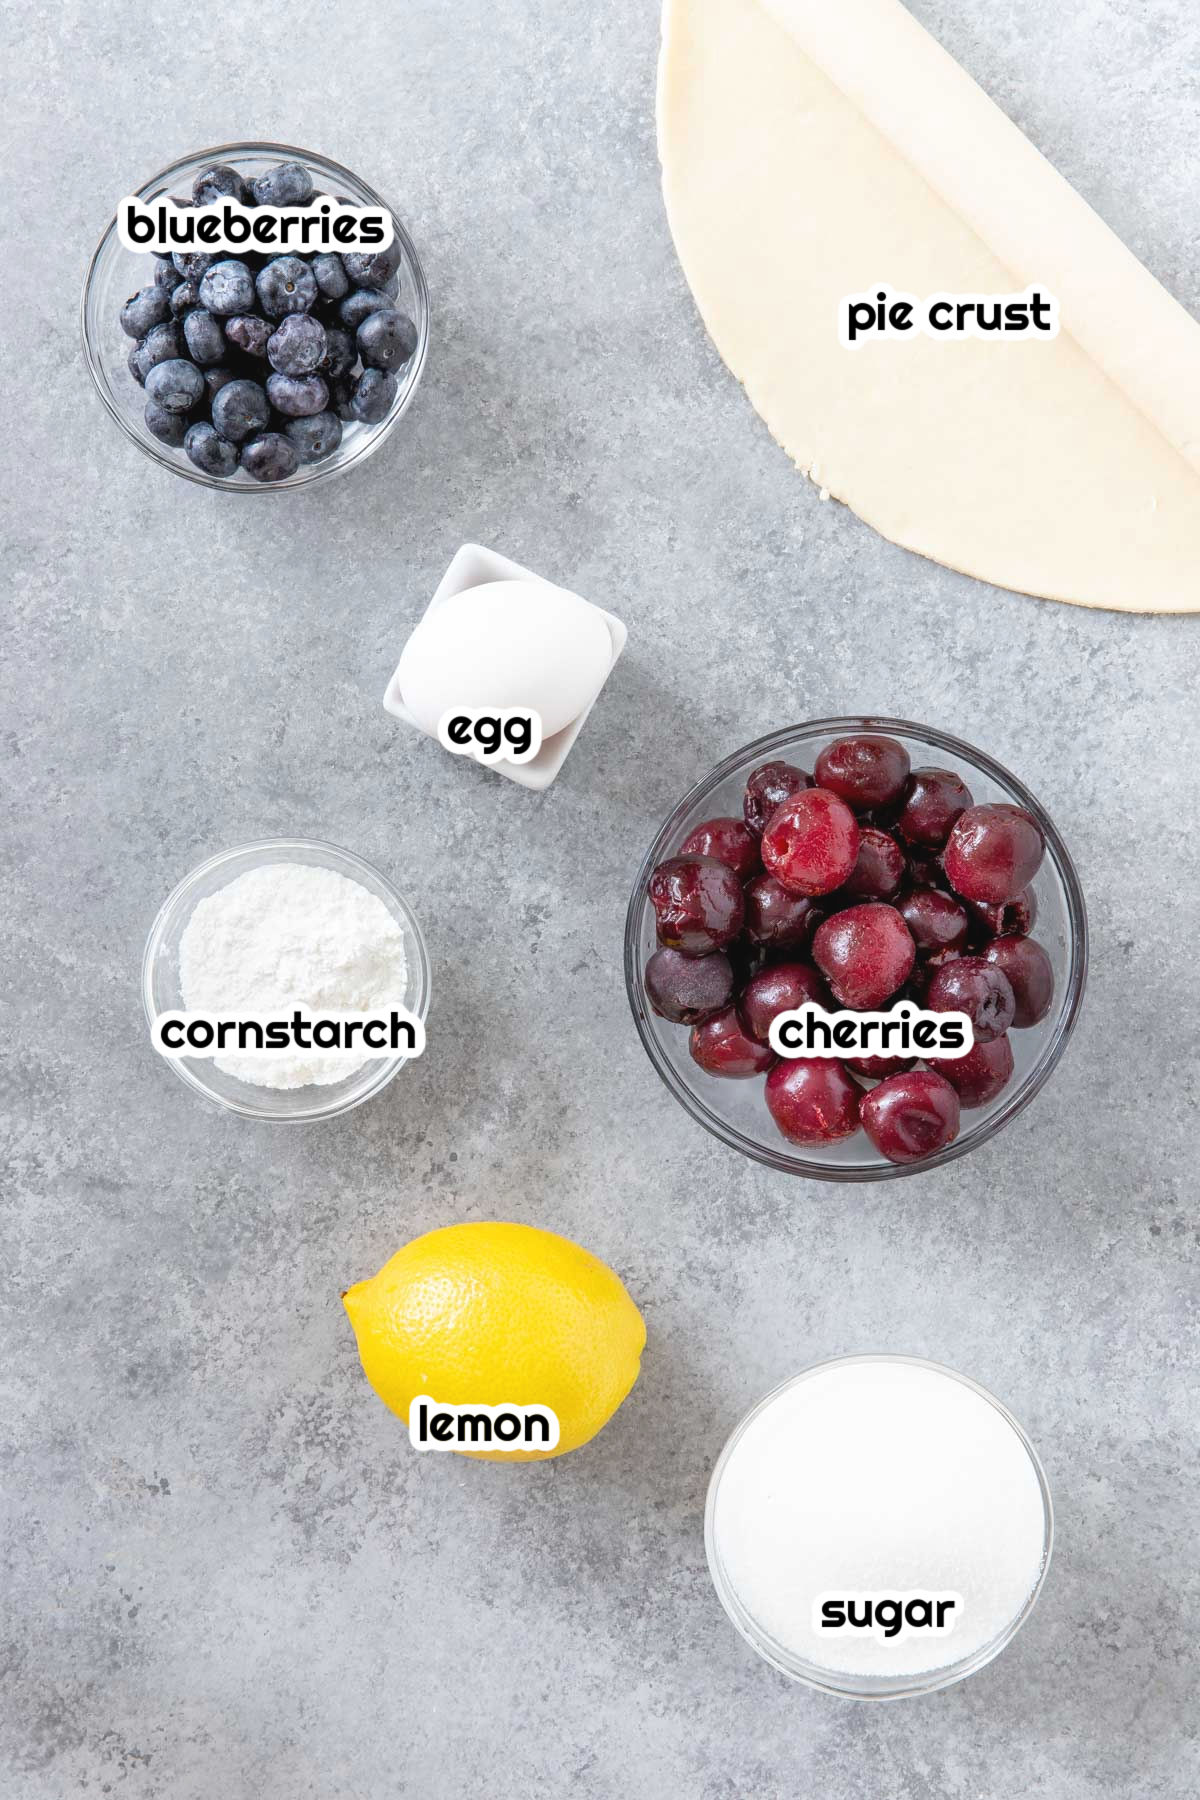 blueberries, pie curst, egg, cornstarch, cherries, lemon, sugar in bowls